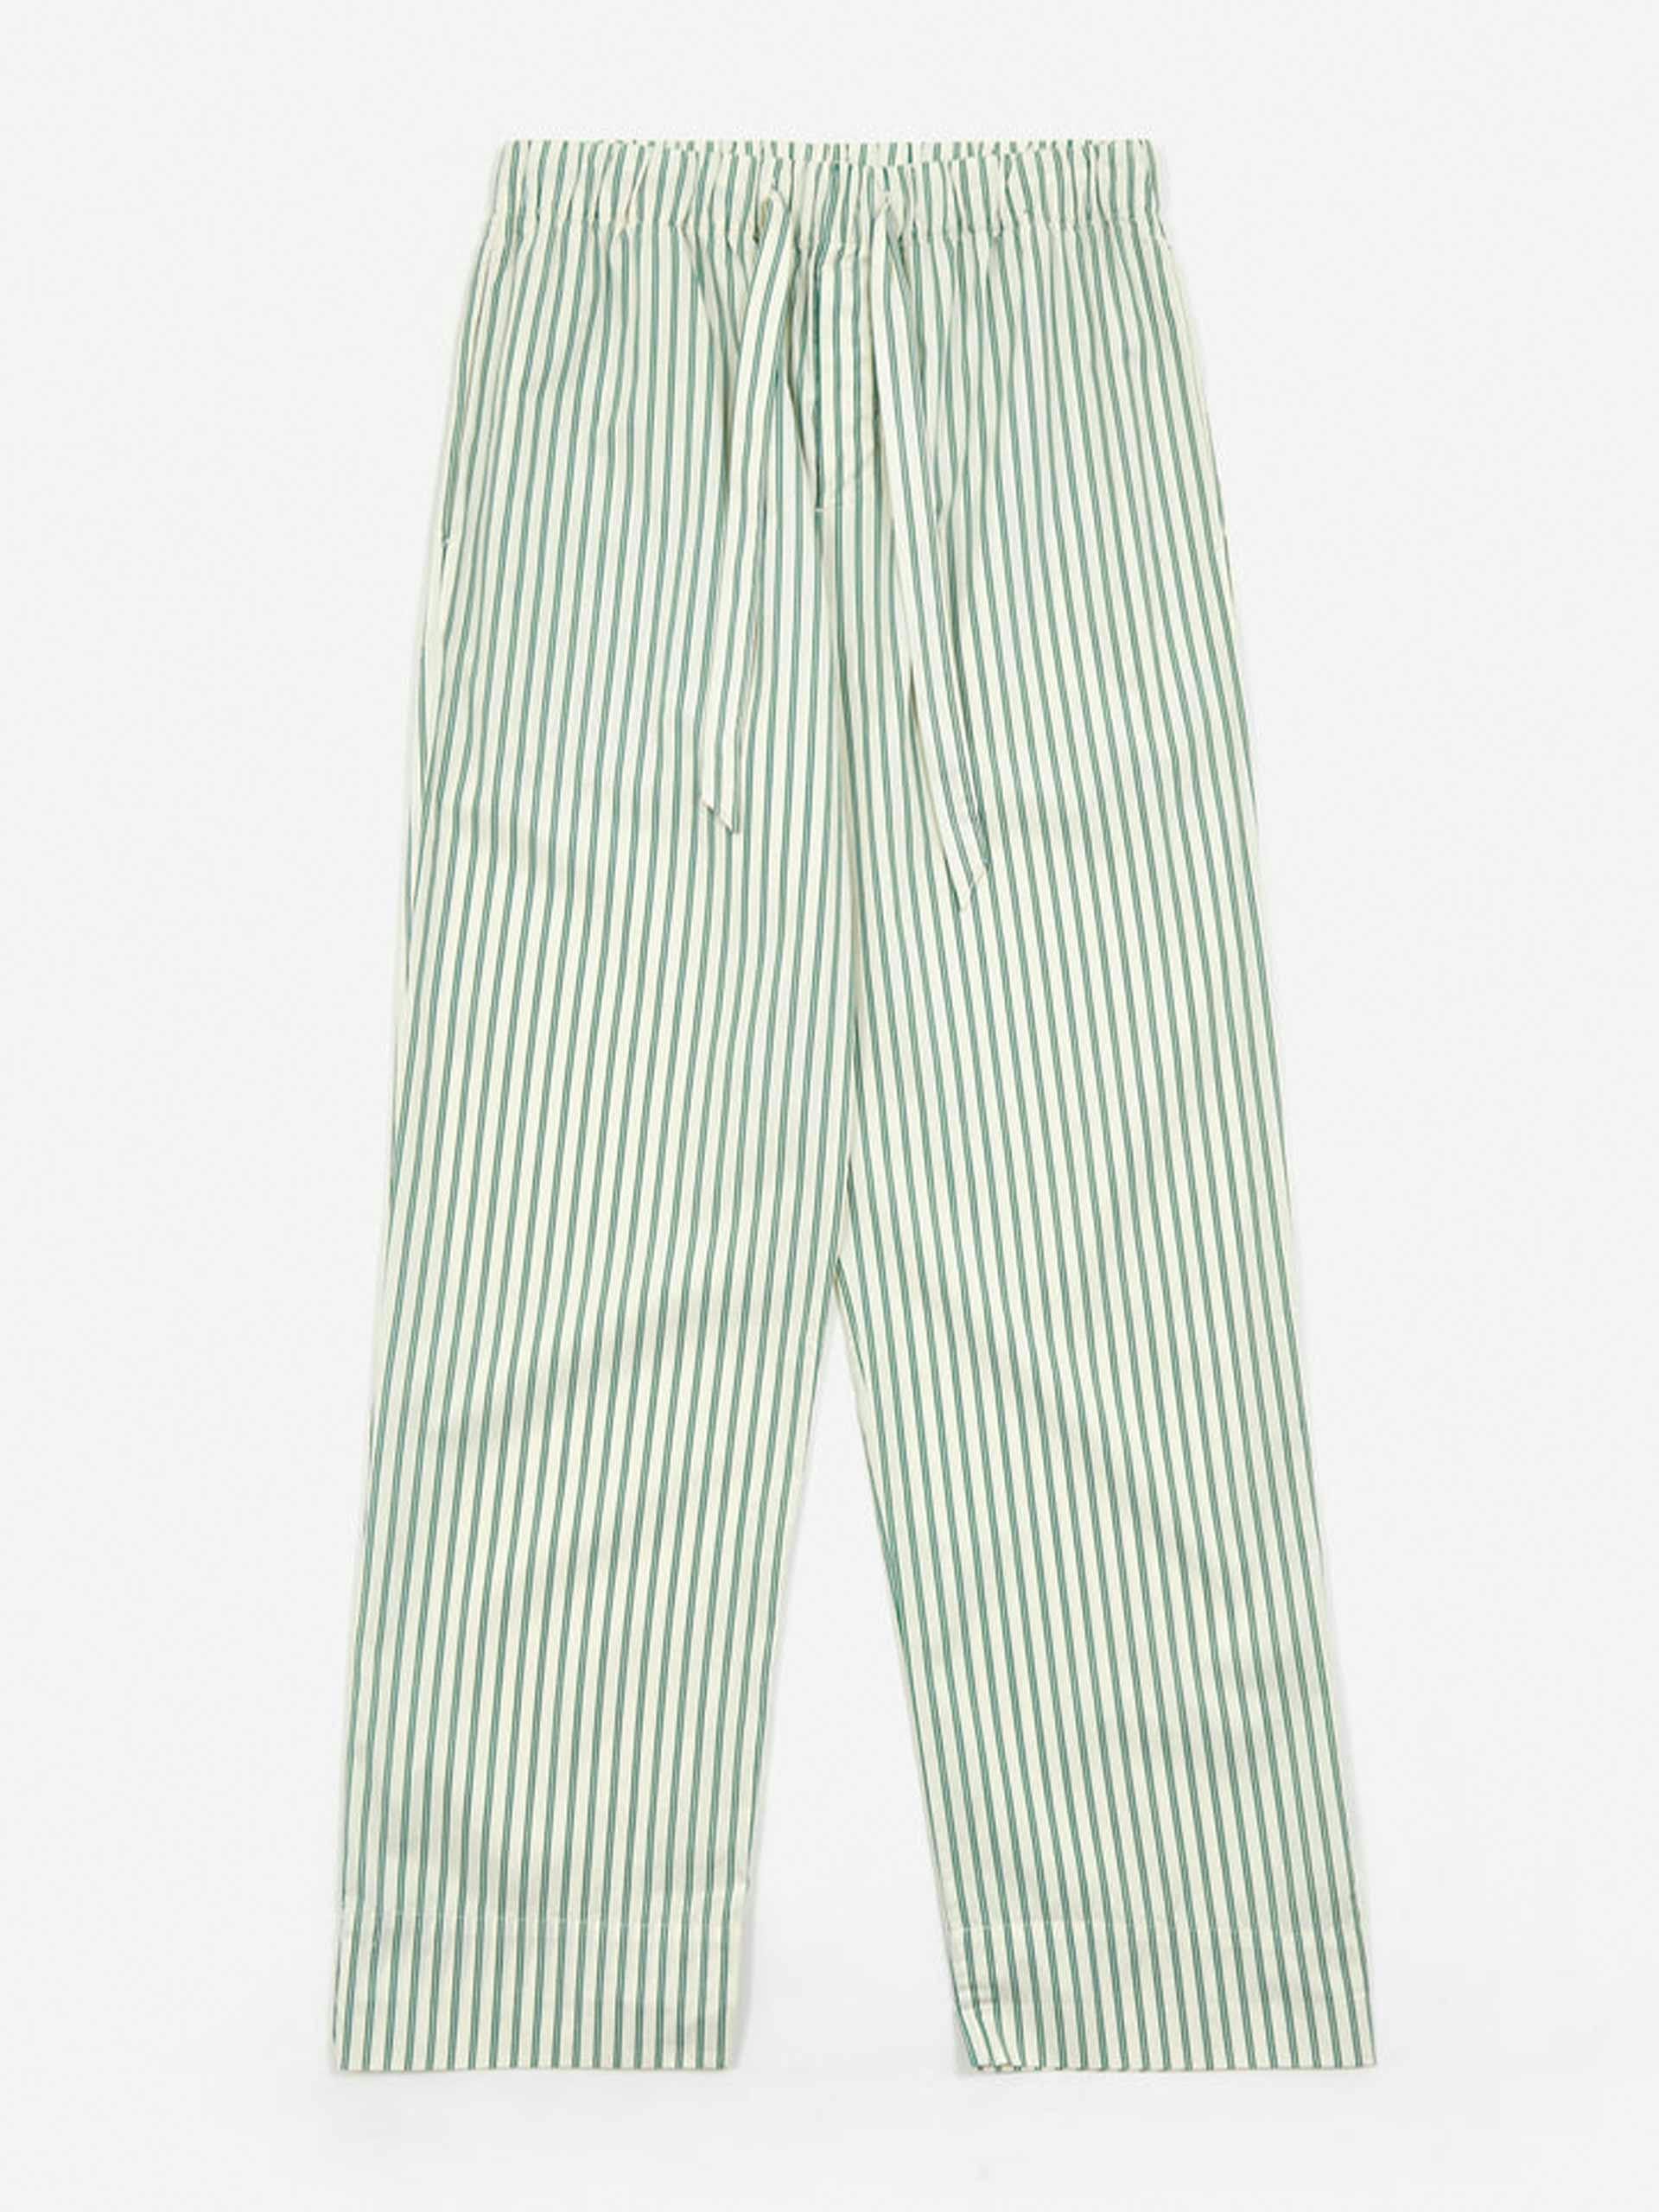 Cotton poplin pyjama pants in clover stripes